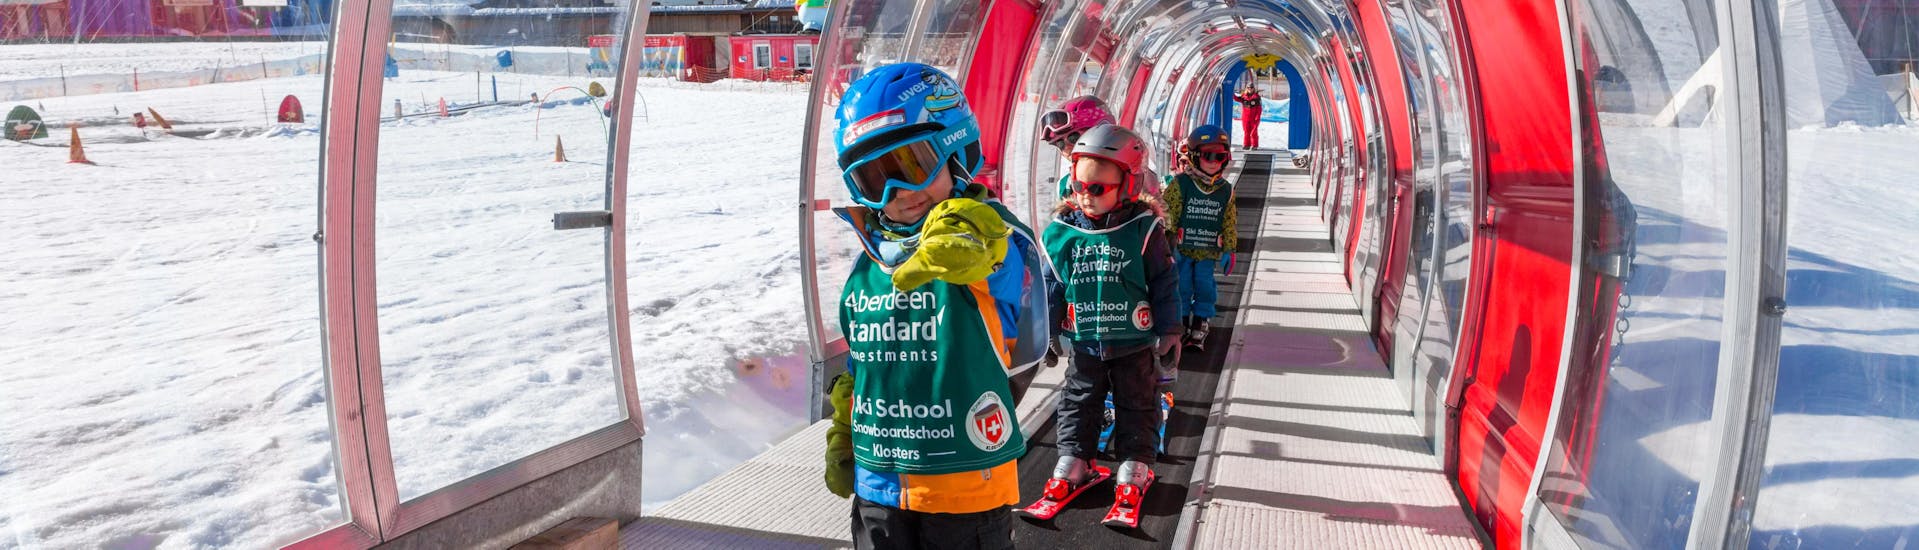 Skilessen voor kinderen "Snowgarden" (tot 6 jaar) voor beginners.